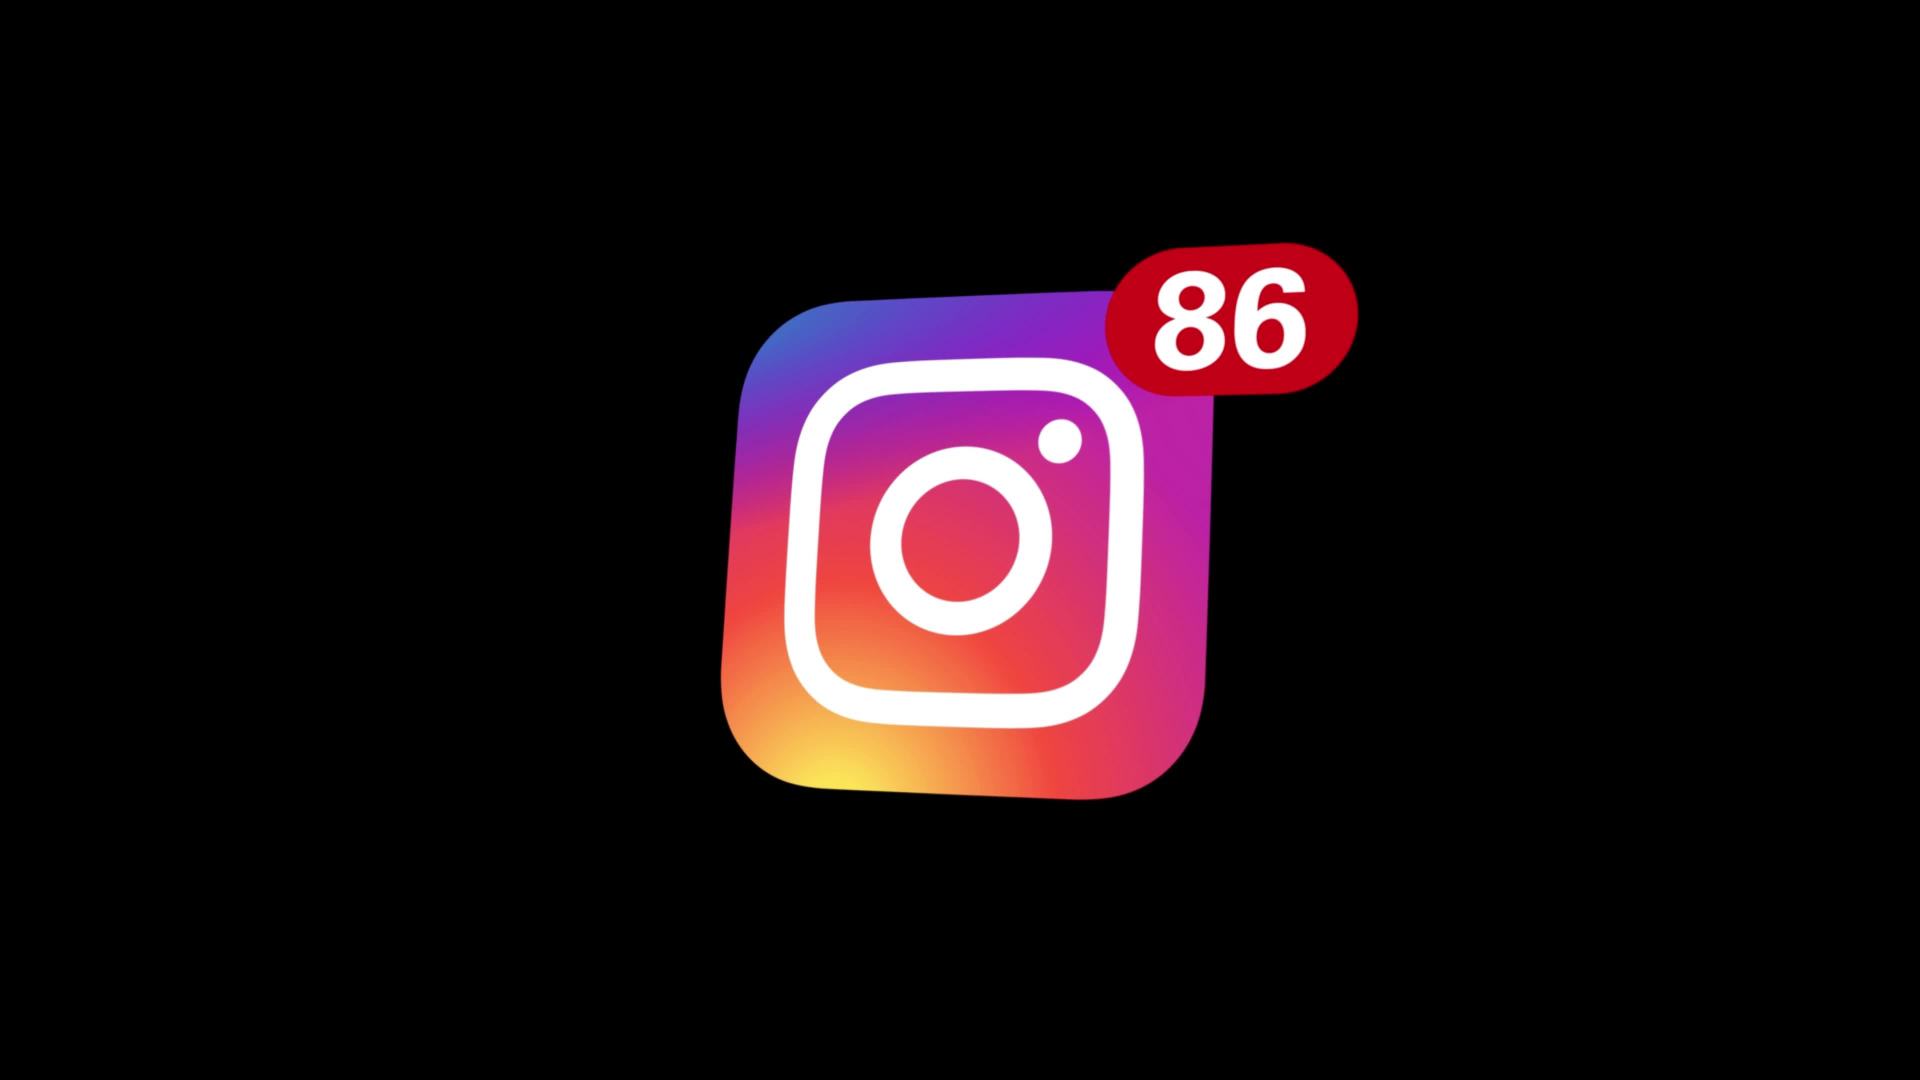 instagram download app